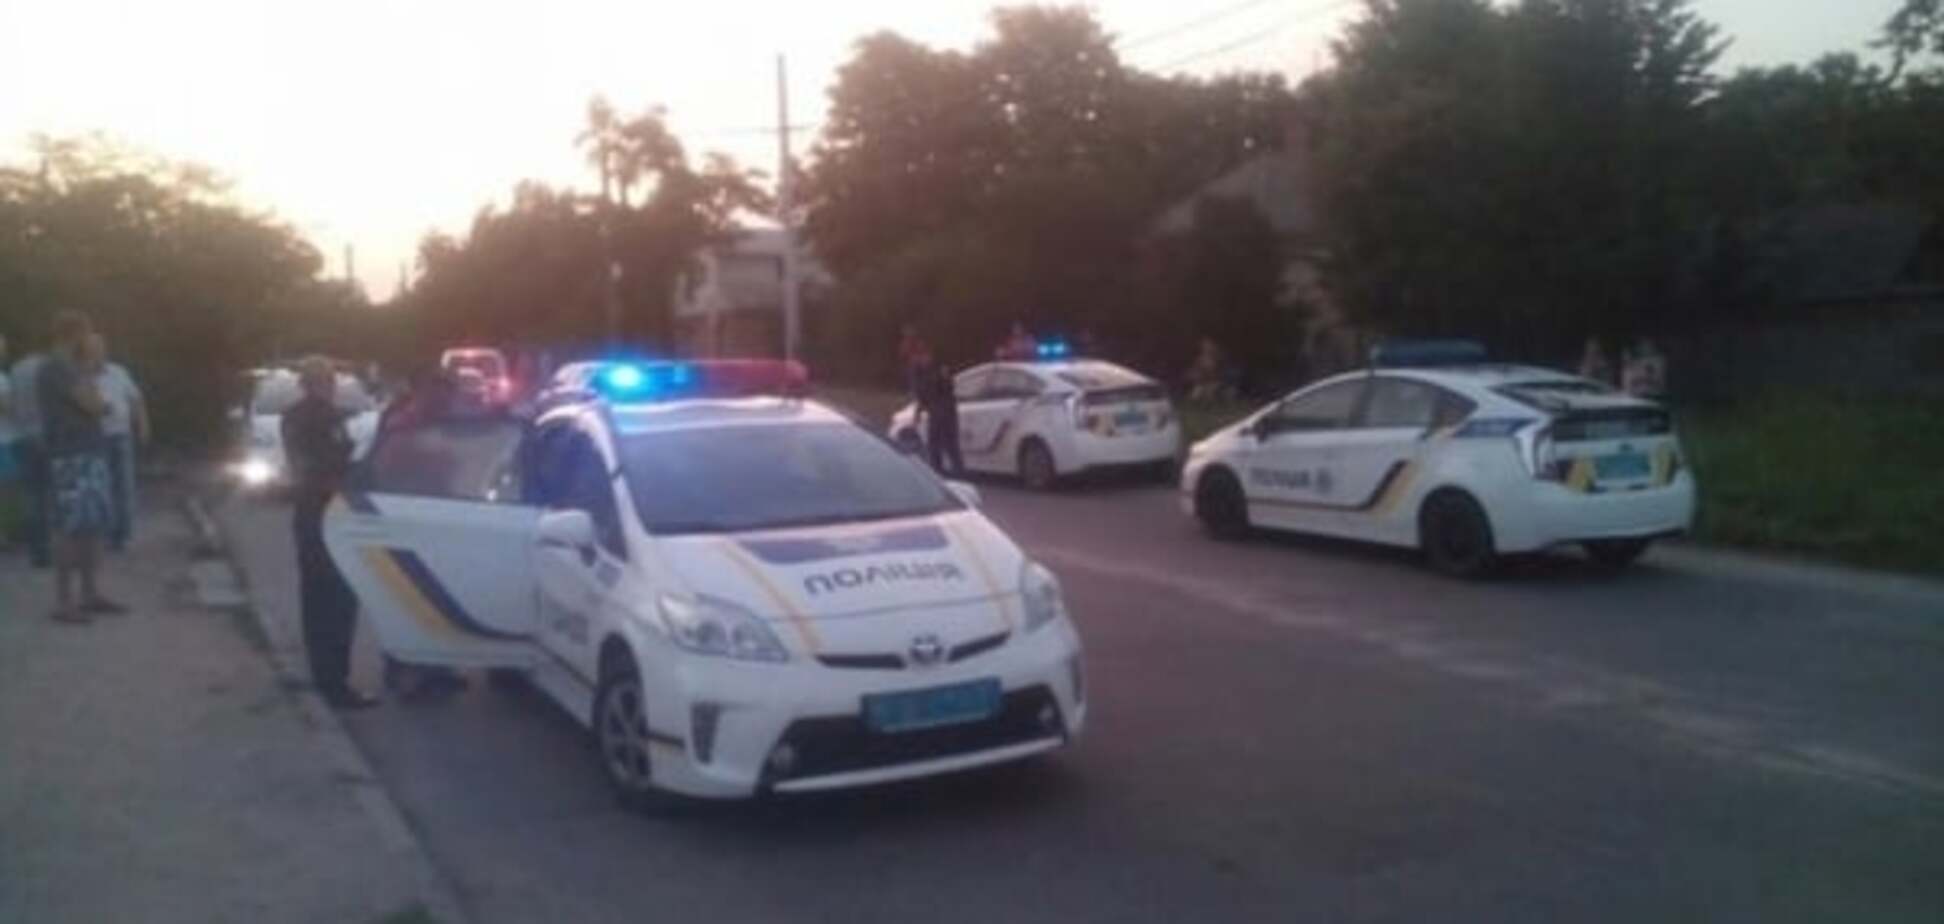  Погоня в Кировограде: бывшего ГАИшника преследовало 6 экипажей патрульной полиции. Фото